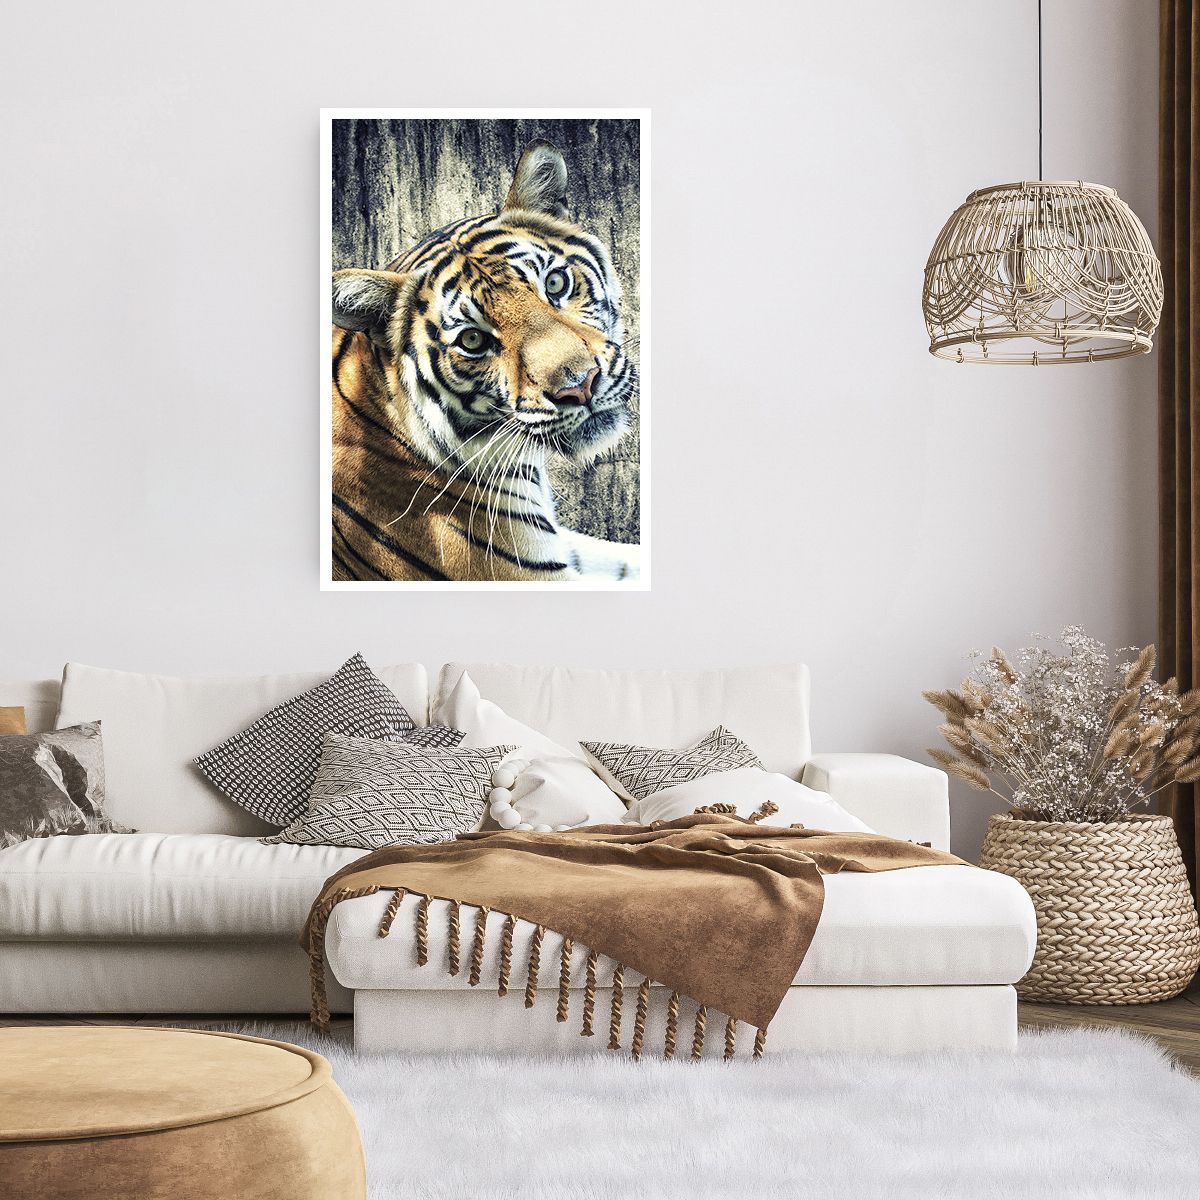 Poster ohne Rahmen Tiere, Poster ohne Rahmen Tiger, Poster ohne Rahmen Afrika, Poster ohne Rahmen Wildes Tier, Poster ohne Rahmen Indien